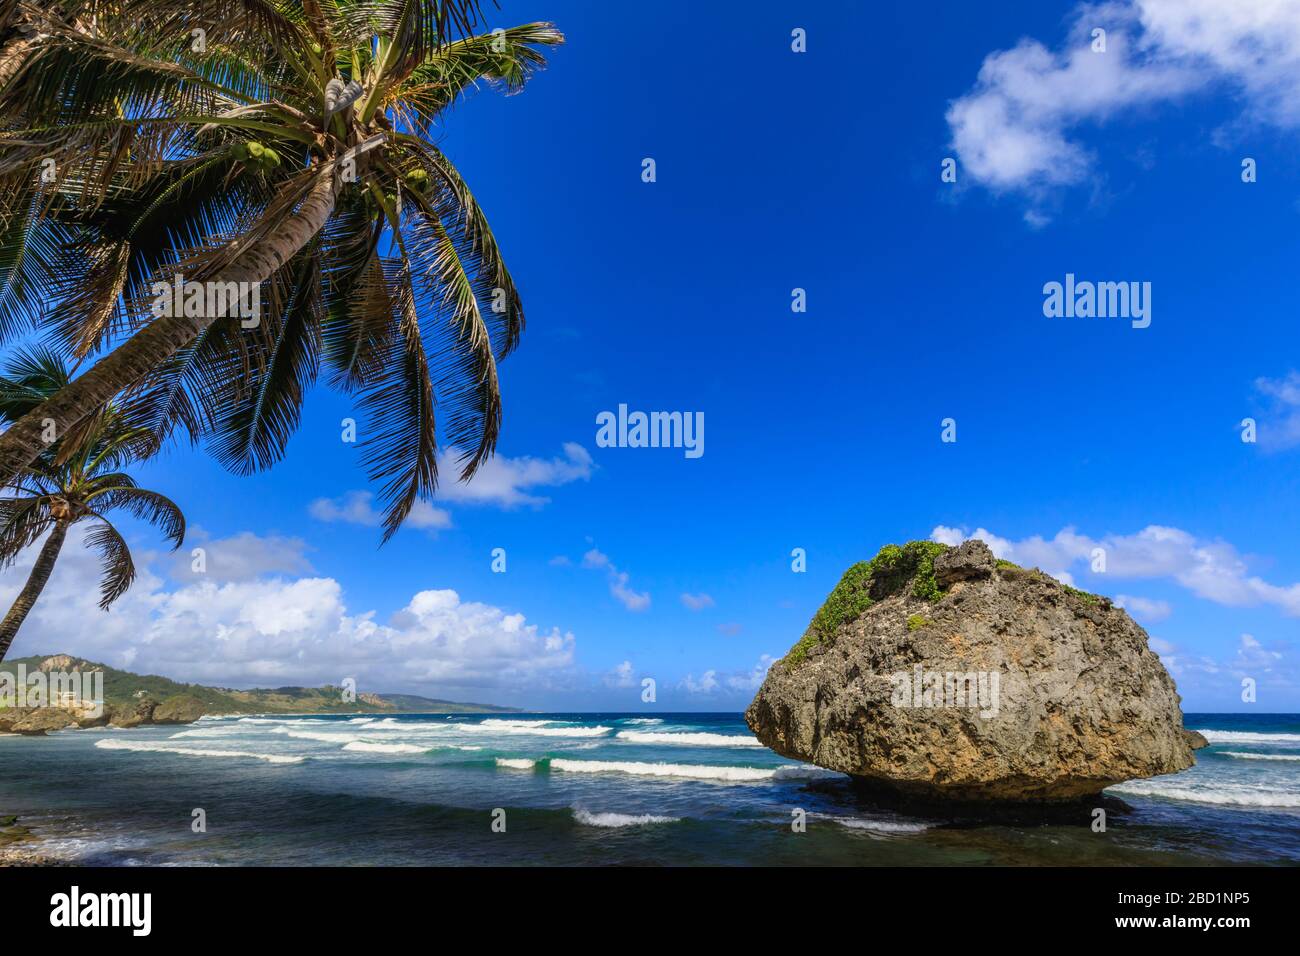 Bathsheba, Mushroom rock, palmier balayé par le vent, vagues de l'Atlantique, côte est sauvage, Barbade, îles Windward, Antilles, Caraïbes, Amérique centrale Banque D'Images